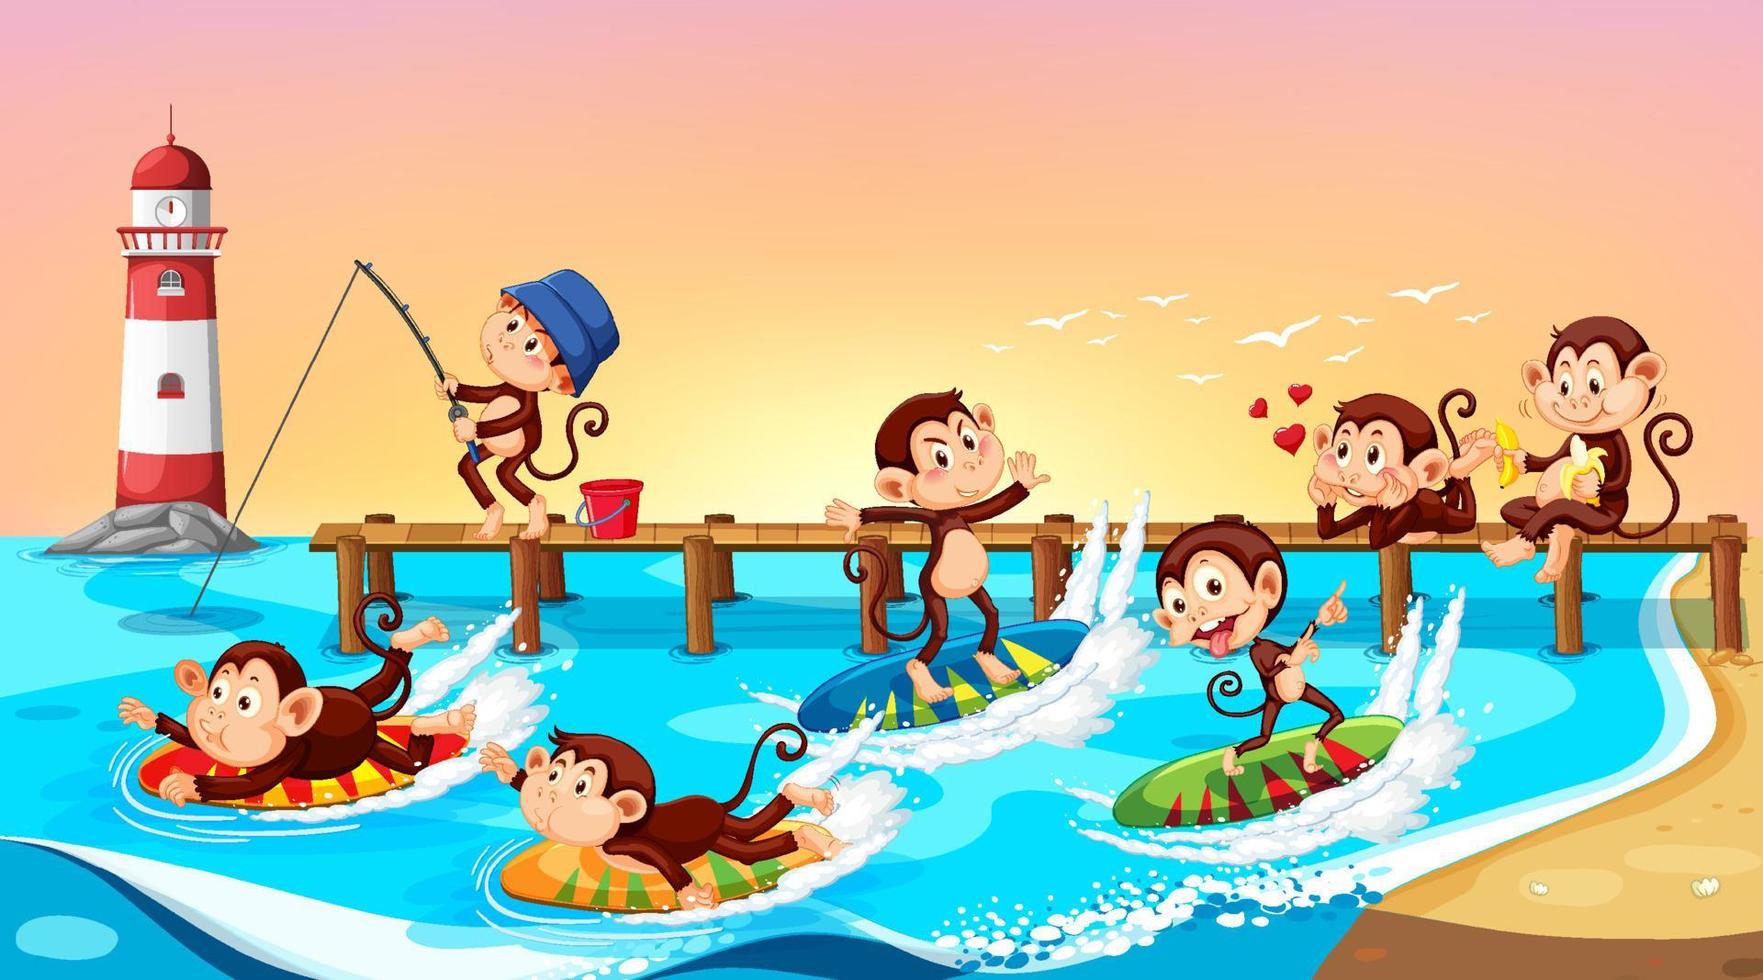 scène de plage avec des singes faisant différentes activités vecteur